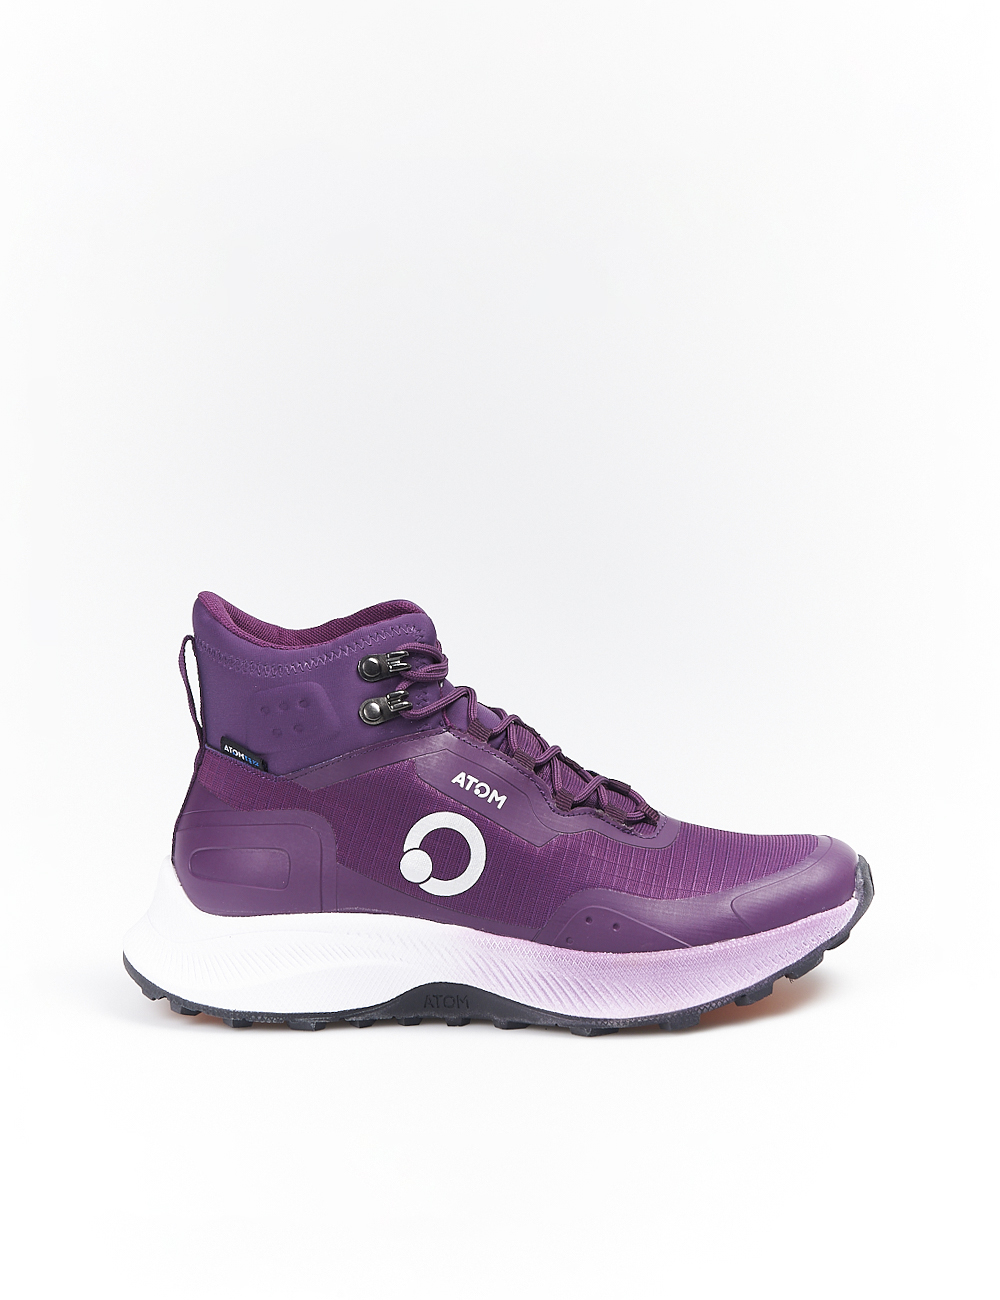 Zapatillas Abotinadas Atom By Fluchos At115 - Lila - Sneakers Para Mujer  MKP